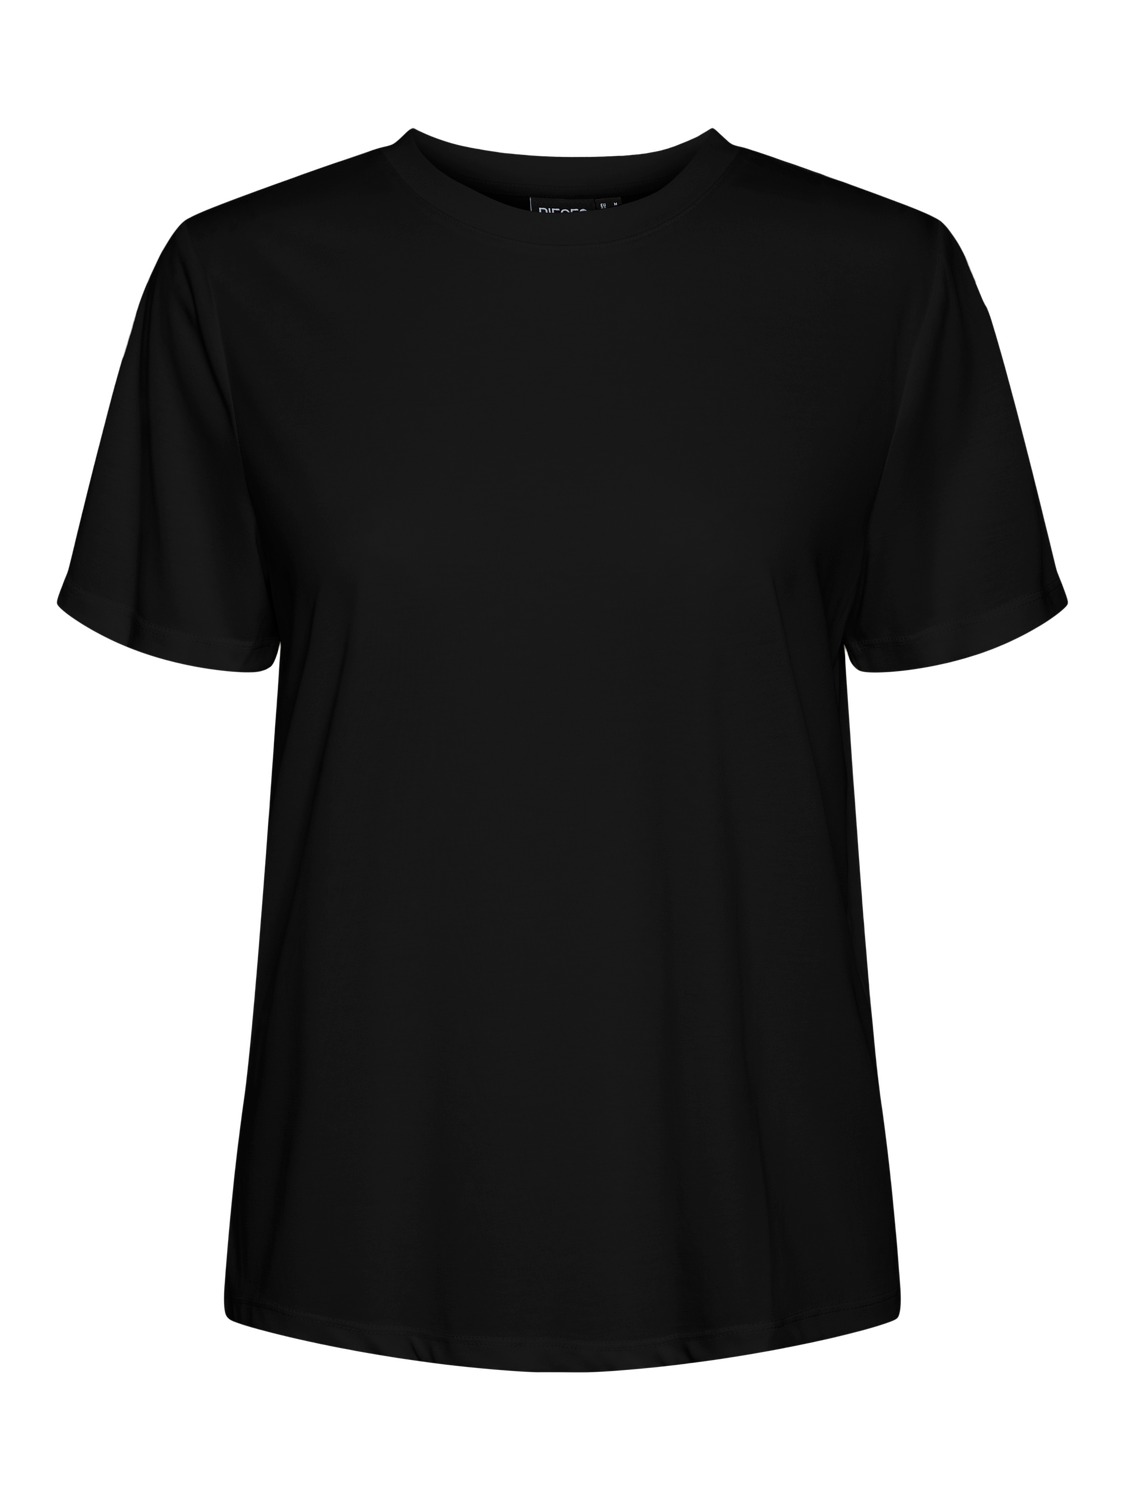 PCANORA T-Shirt - Black